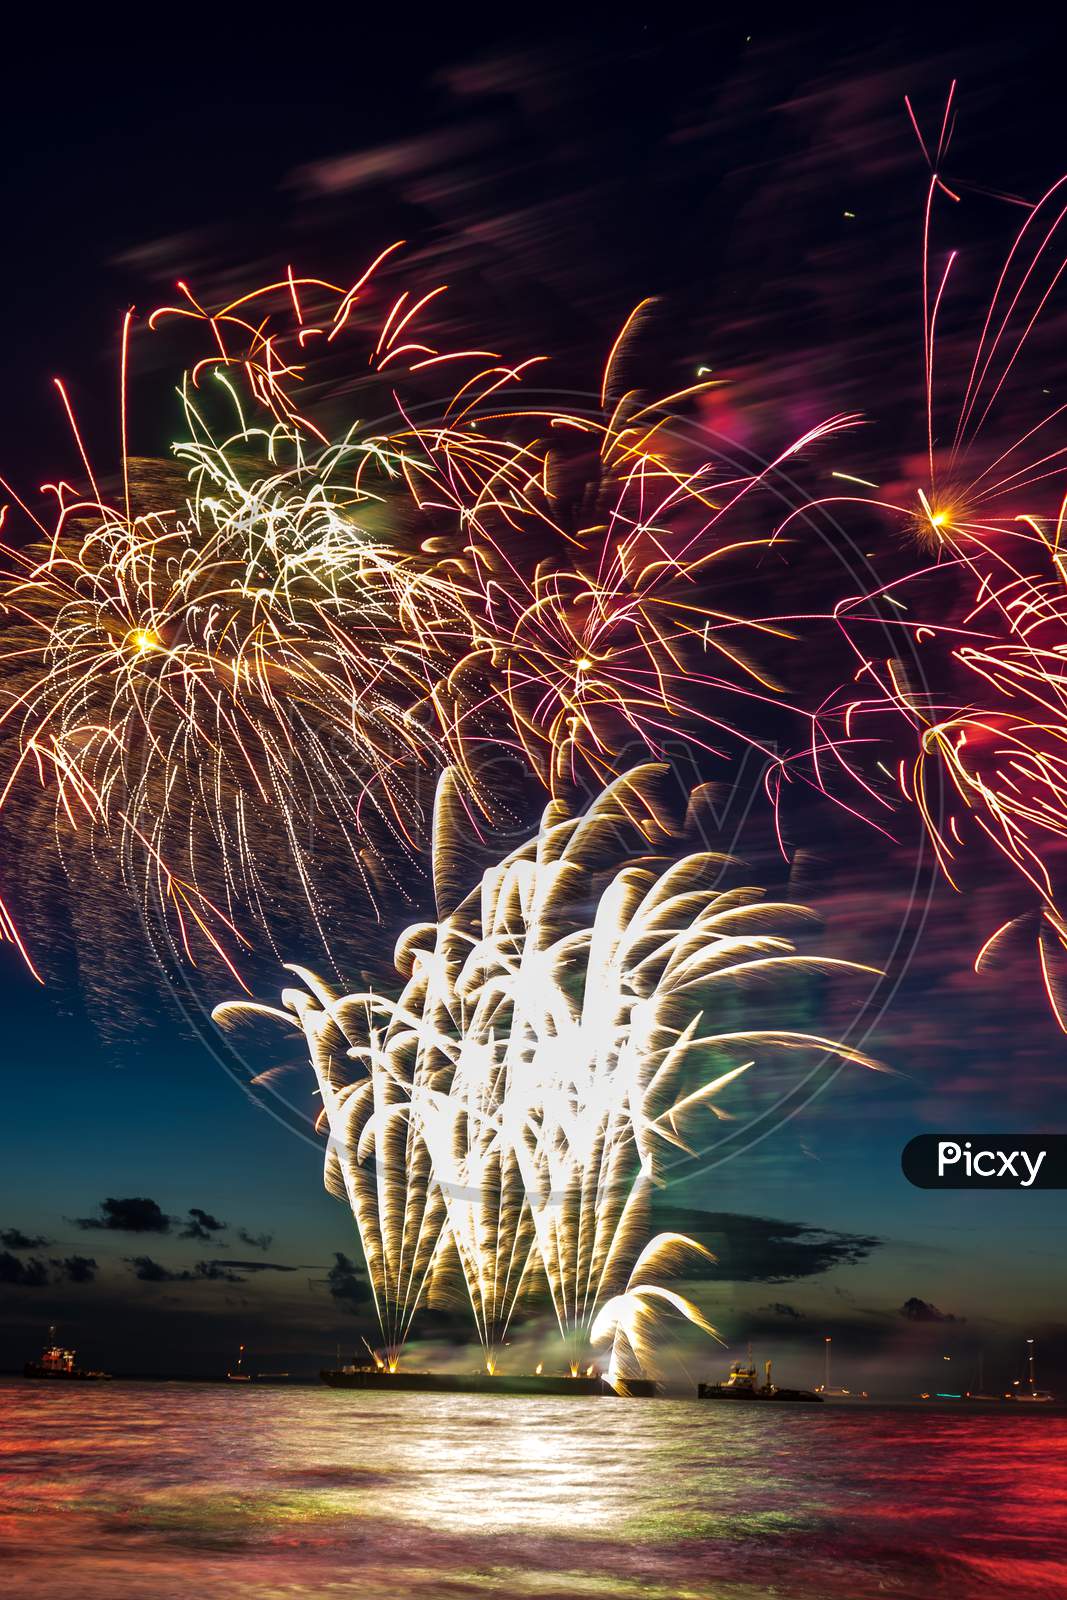 Annual Summer Fireworks Event At Scheveningen Beach In Den Haag On 17Th August By Netherlands